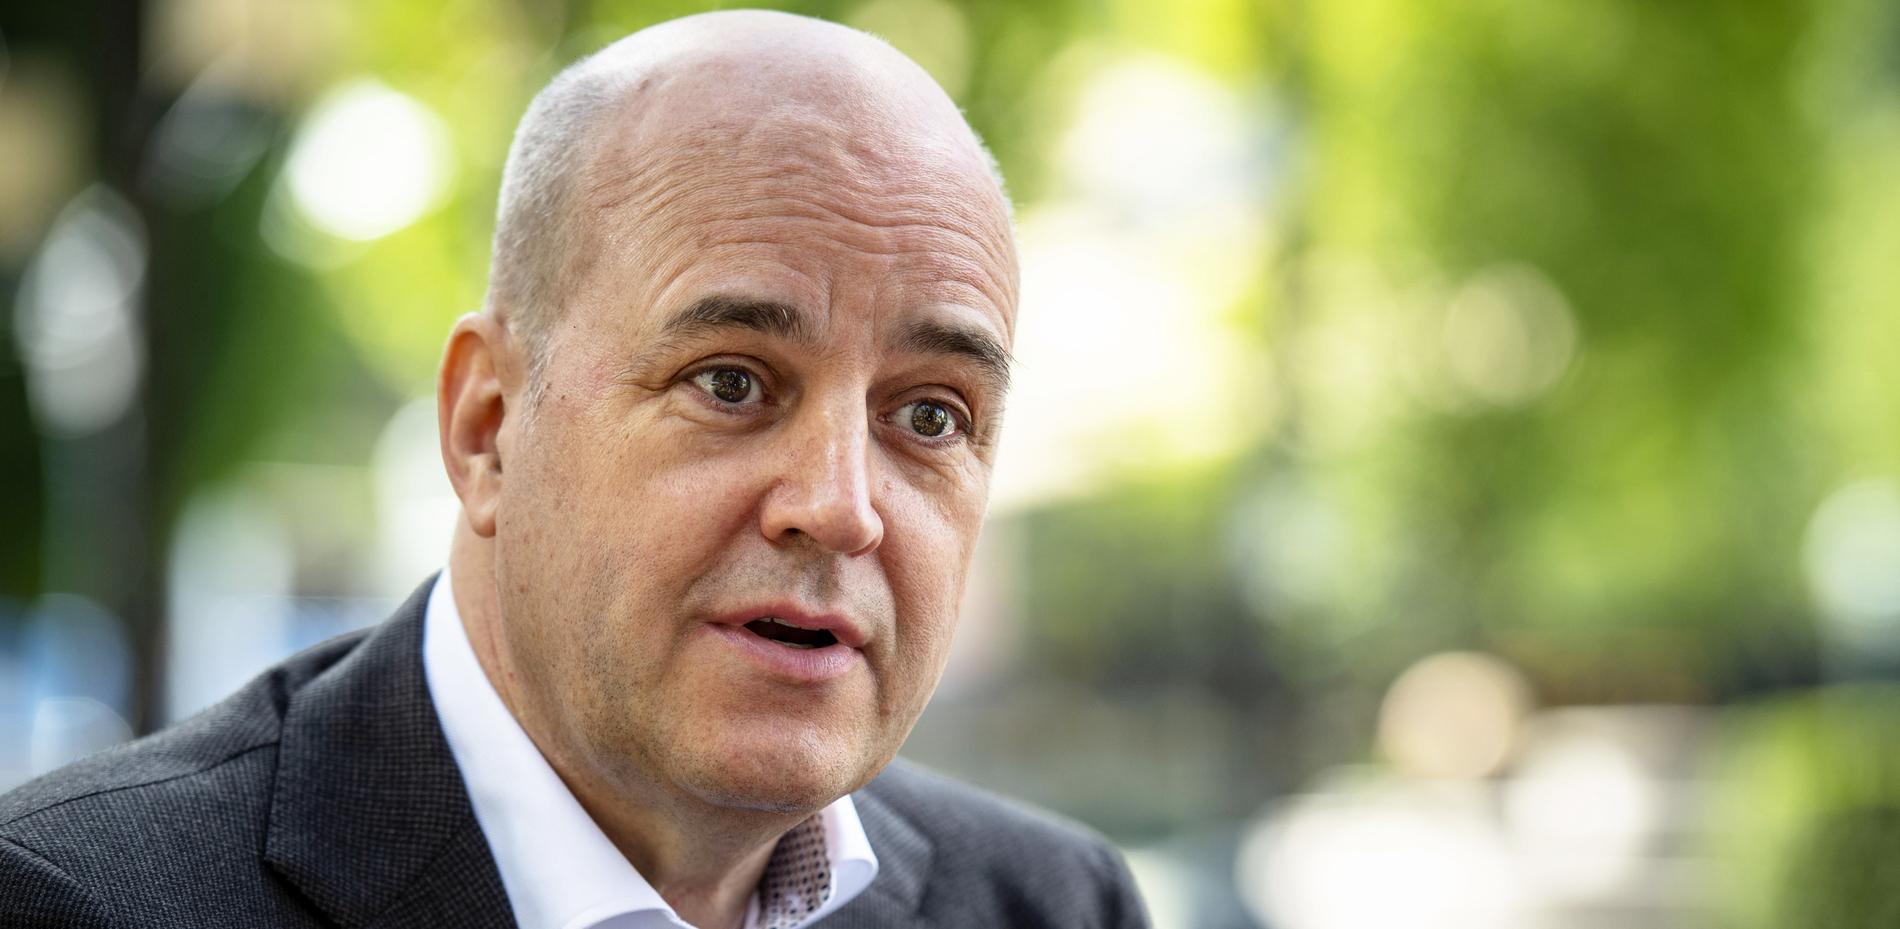 Fredrik Reinfeldt är nominerad till jobbet som ny ordförande i Svenska fotbollförbundet, enligt Expressen.